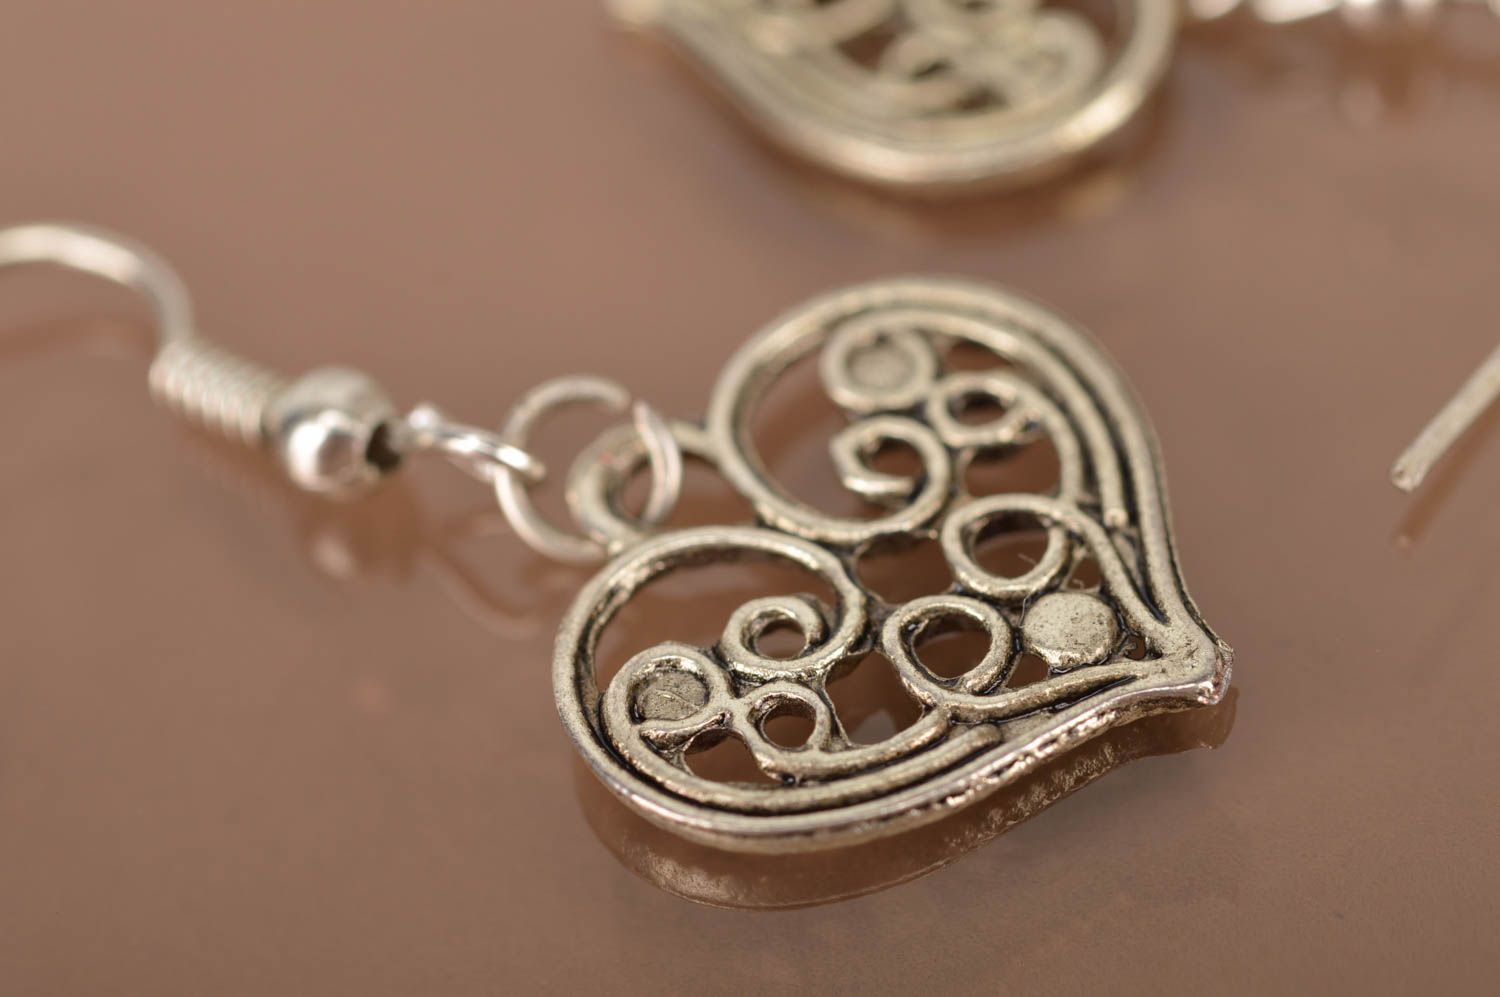 Unusual handmade metal earrings fashion earrings designs jewelry for women photo 4